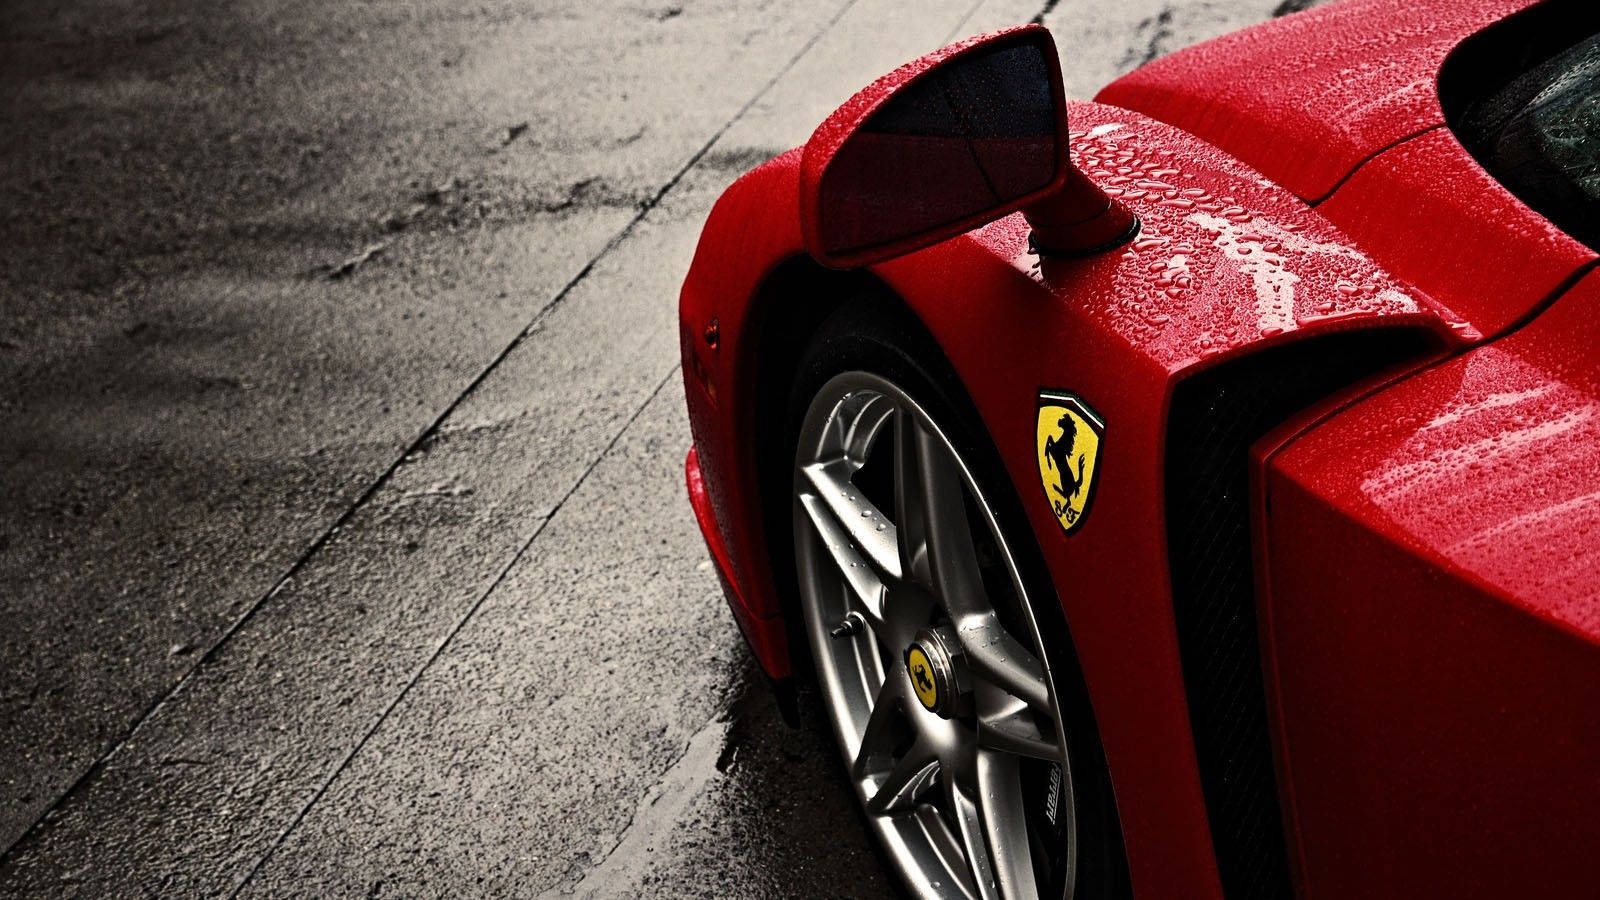 A Ferrari Supercar Drives Through The Rain Wallpaper